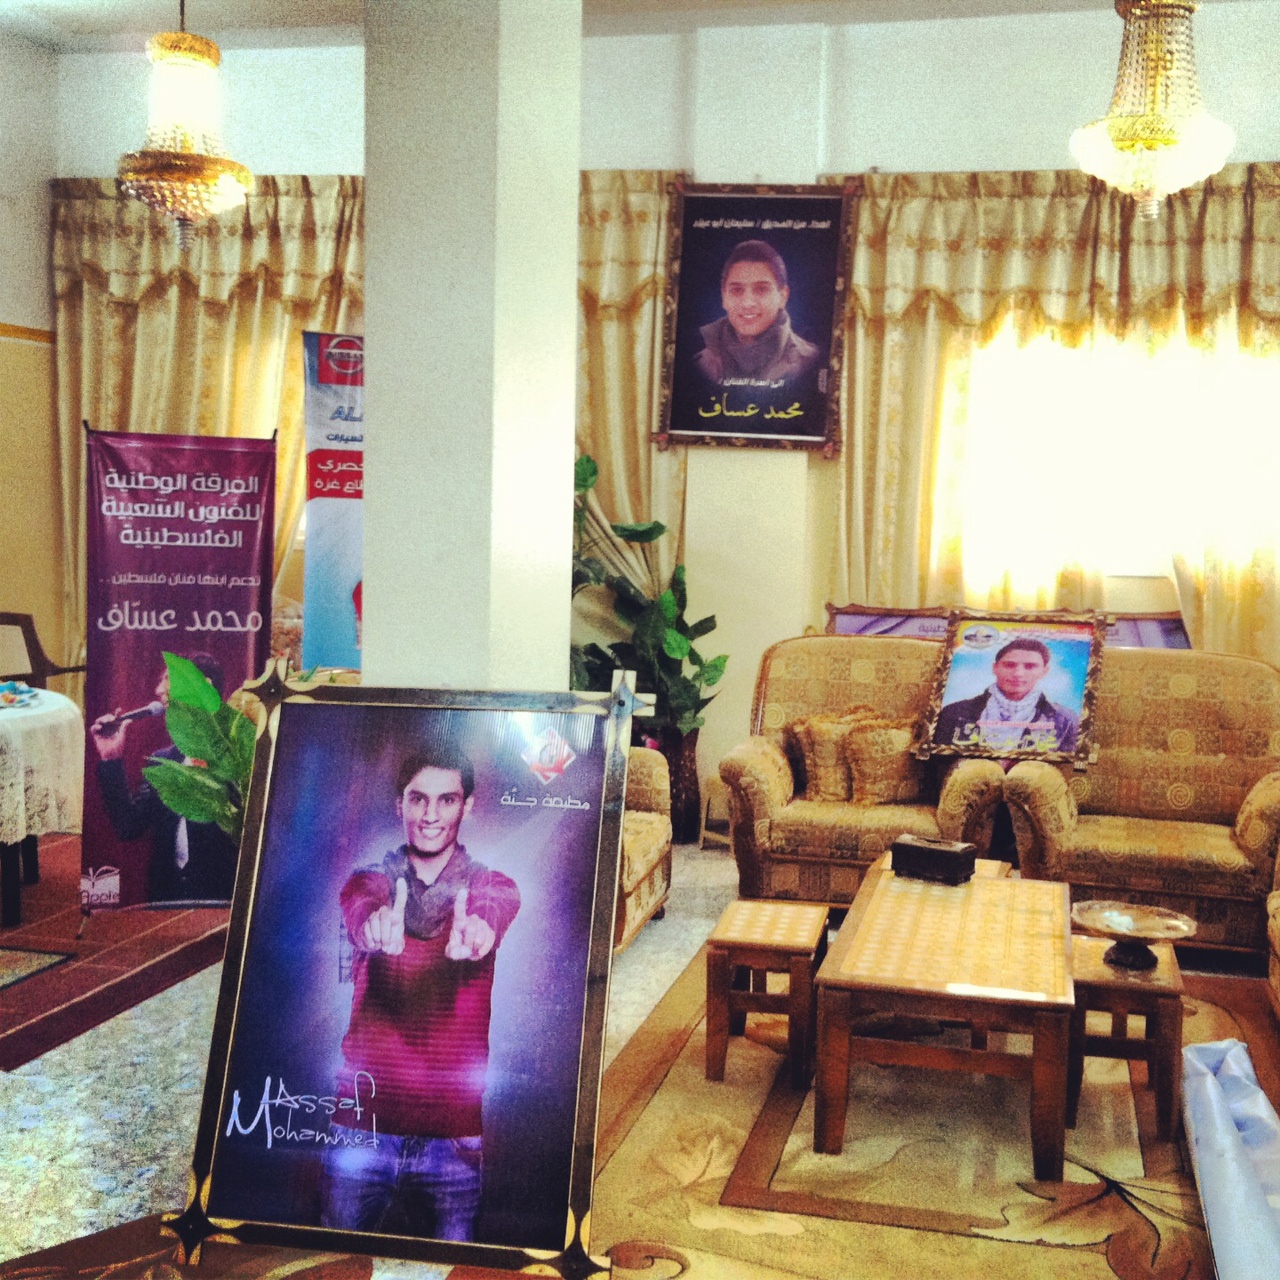 Posters à la gloire de Mohammed Assaf dans le salon de la maison familiale à Khan Younes, sud de la Bande de Gaza, mai 2013 www.merblanche.com all rights reserved